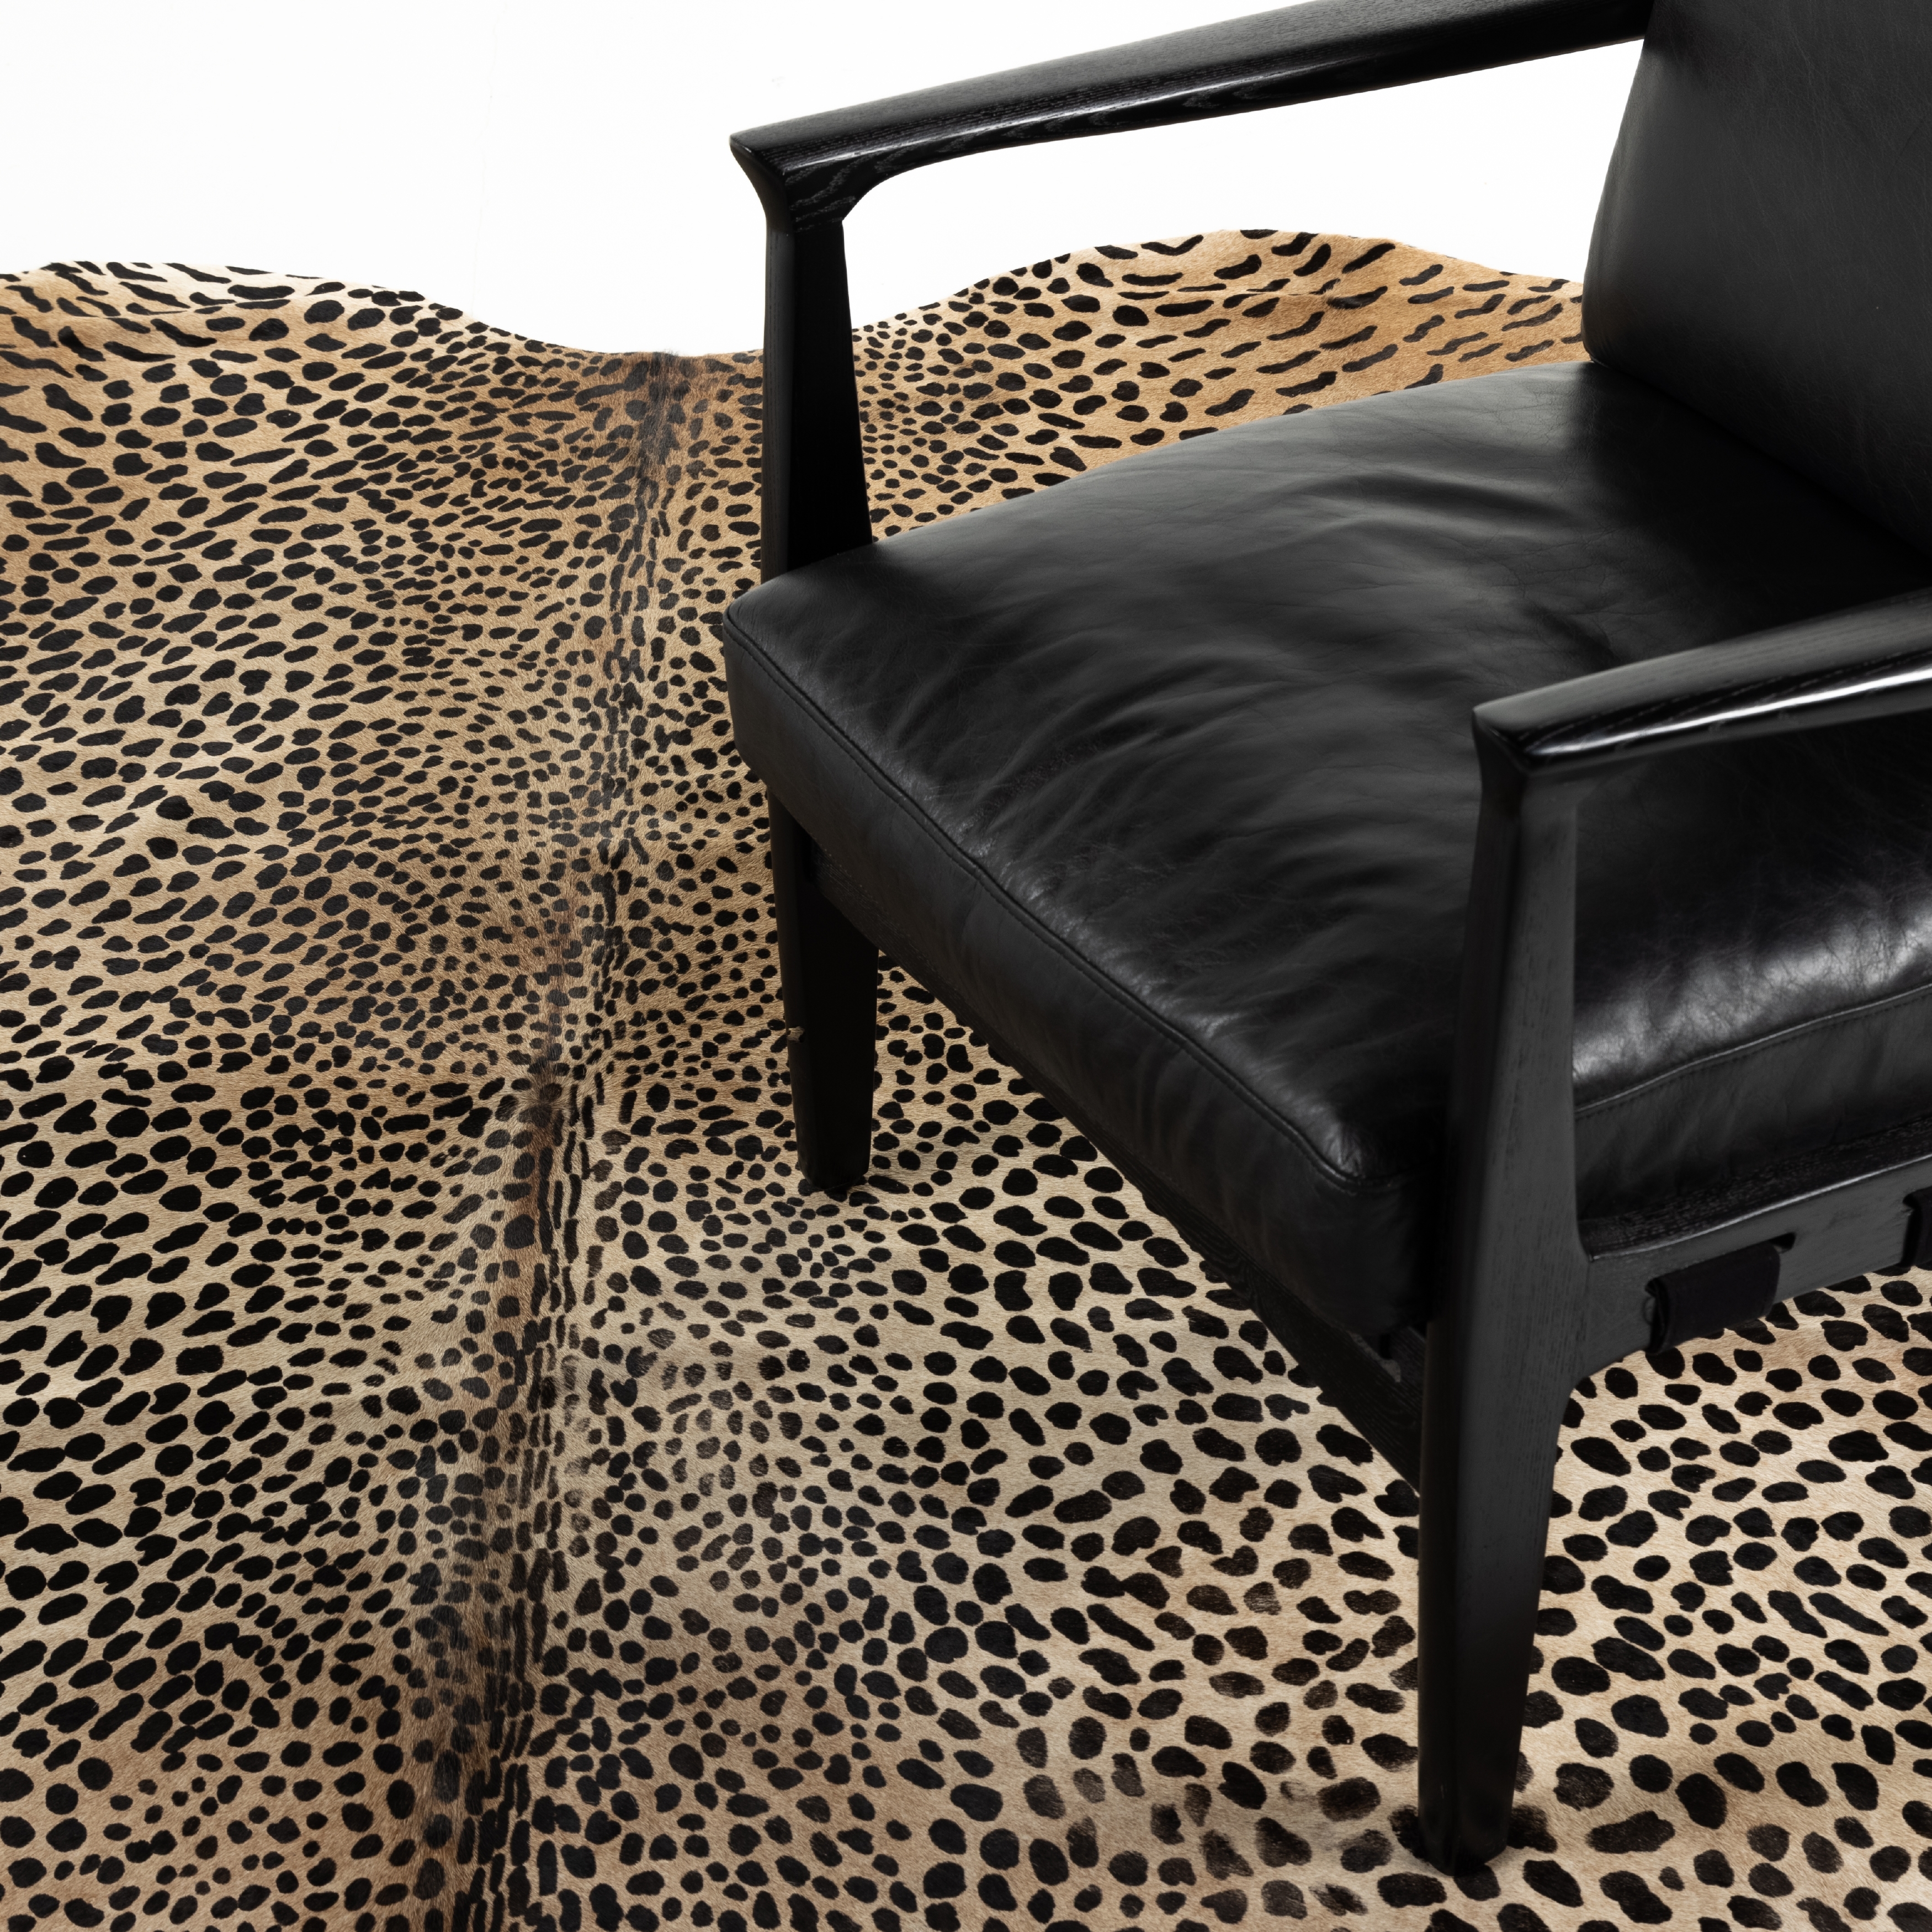 Leopard Printed Hide Rug-Brown & Black - Image 4